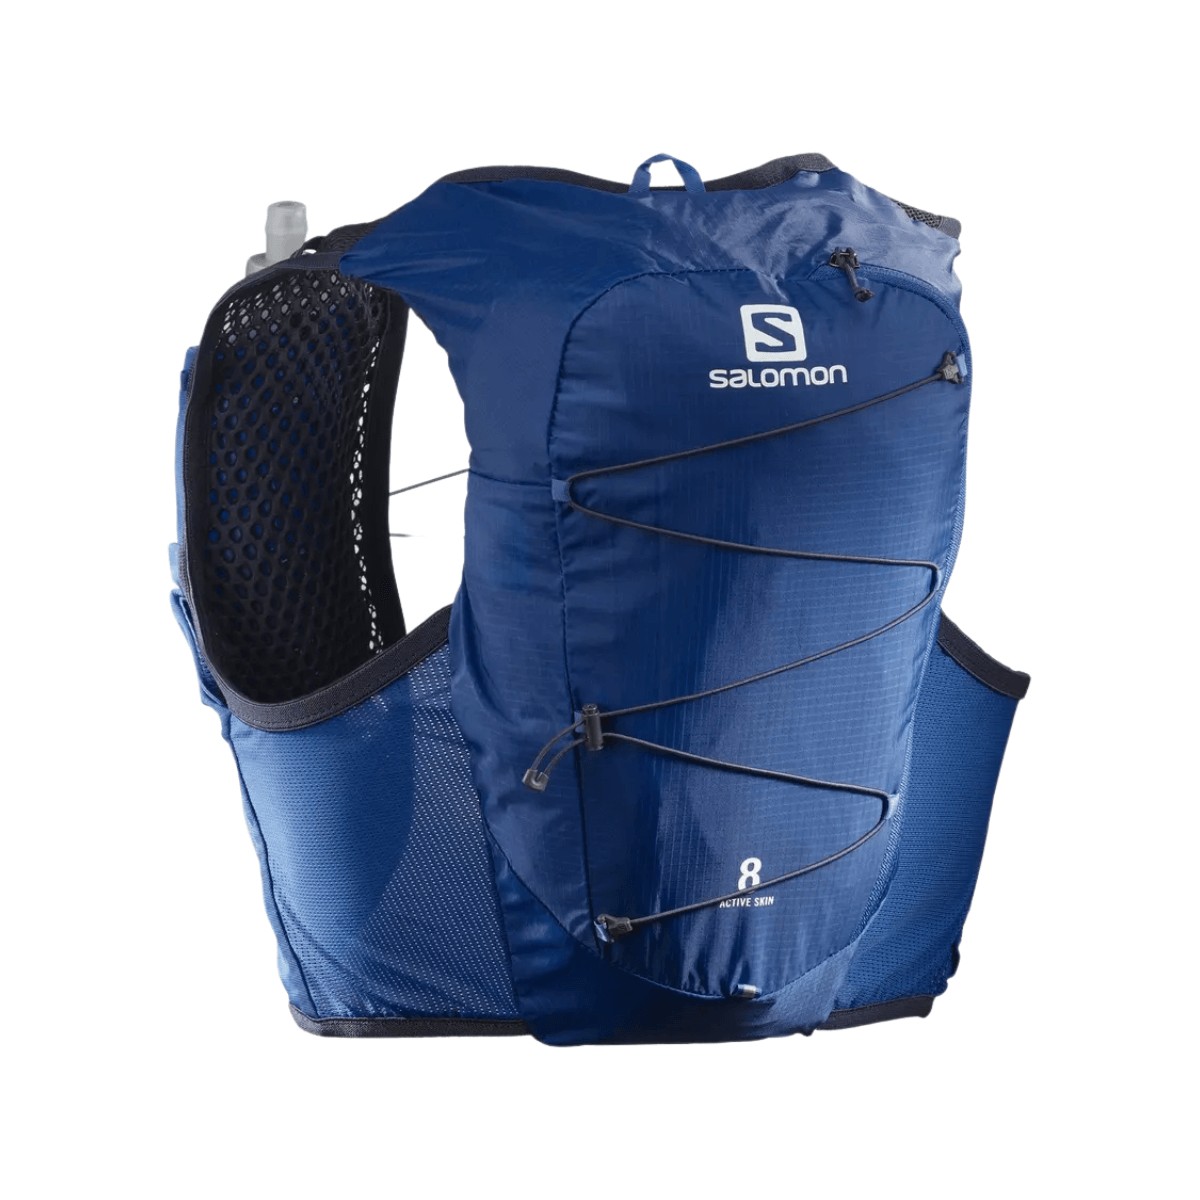 Salomon Active Skin 8 Blue Vest, Size S